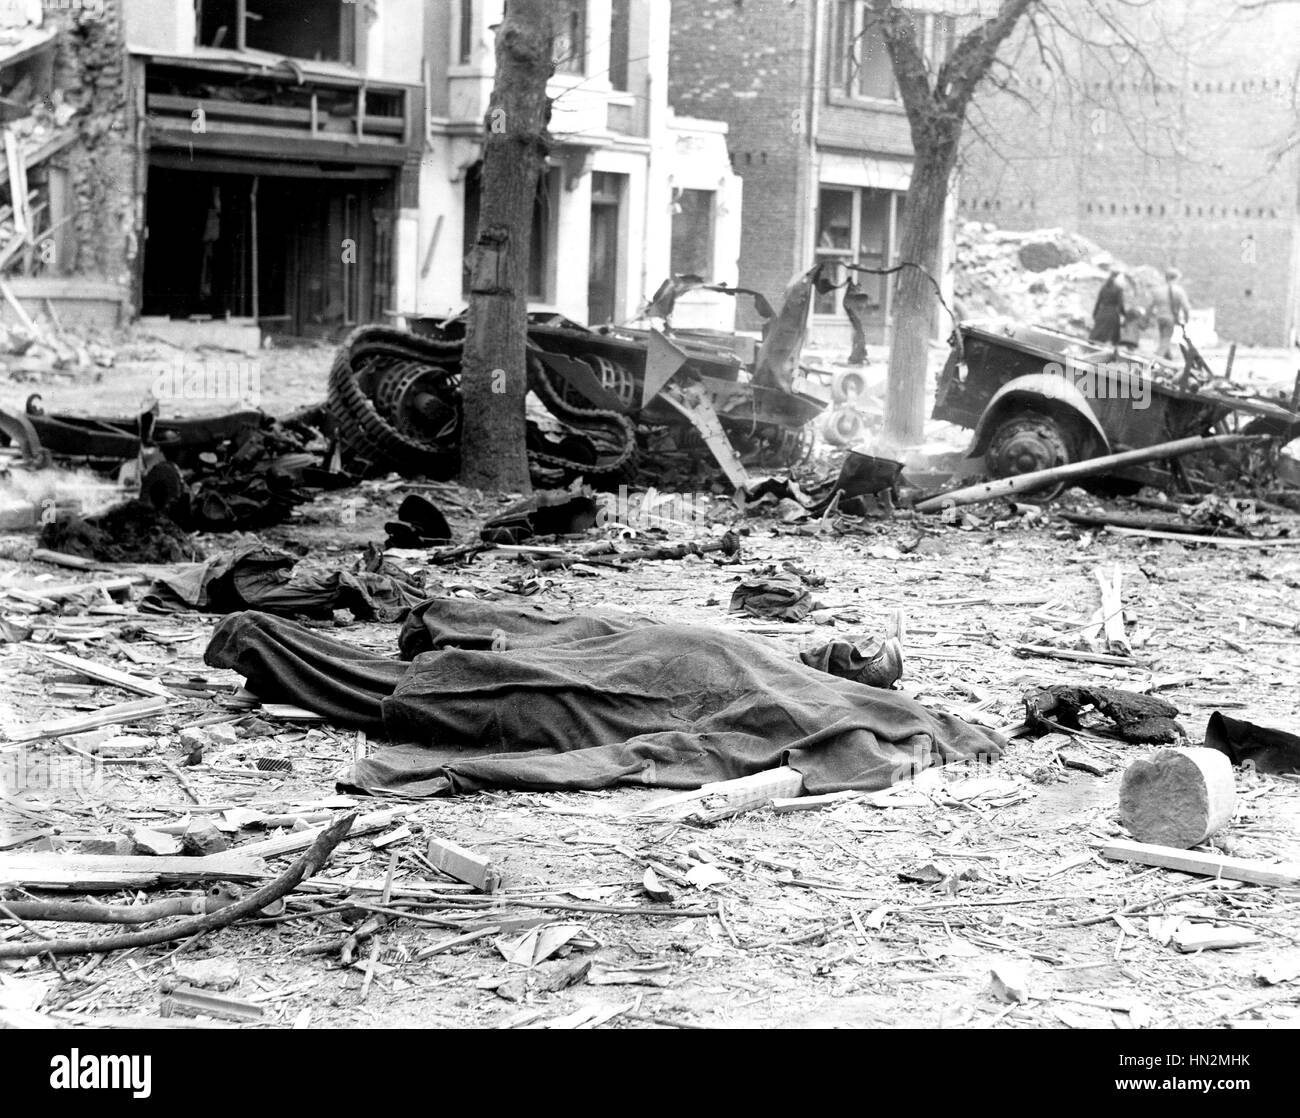 Rue de Bastogne nach der Bombardierung durch die deutsche Luft zwingt 1944 Belgien, zweiten Weltkrieg Krieg National Archives, Washington Stockfoto